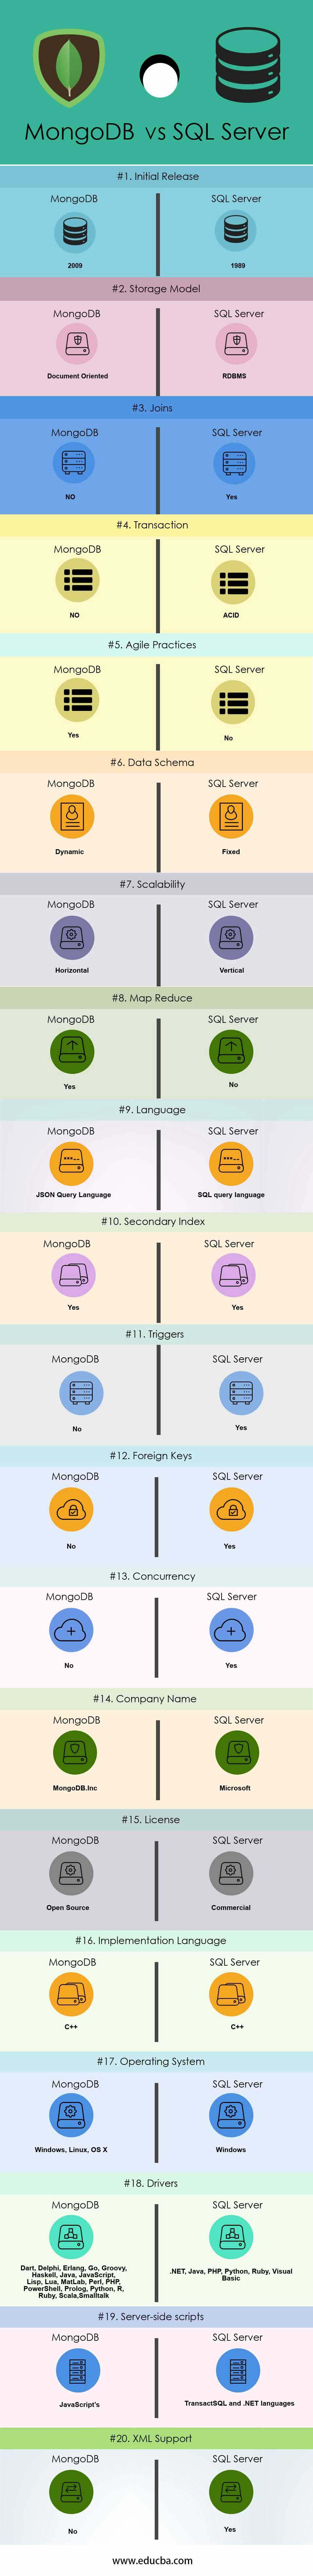 mongodb-vs-sql-Server-info